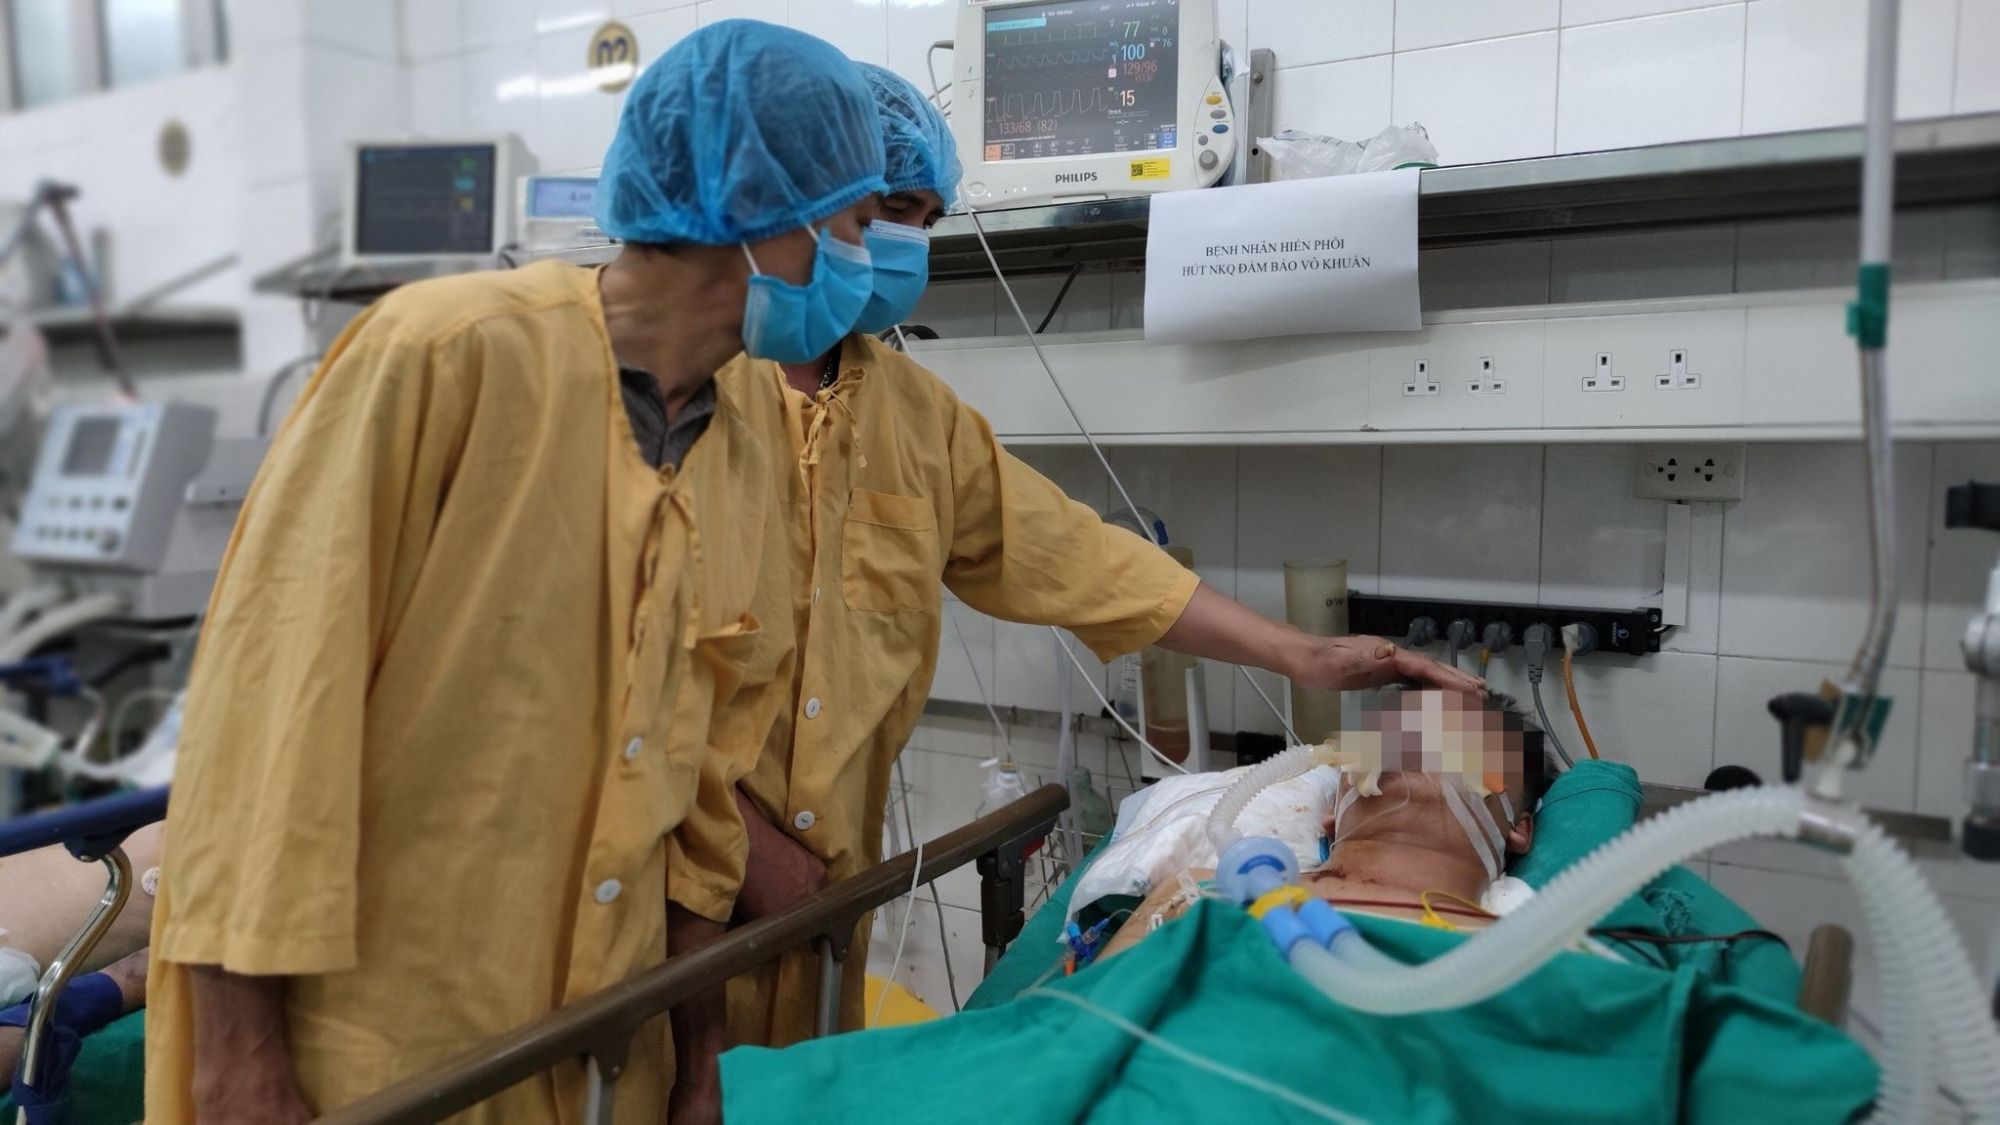 Giữa mong manh cái chết, chàng trai 19 tuổi ước nguyện hiến tạng để nối dài sự sống - Bệnh viện Việt Đức